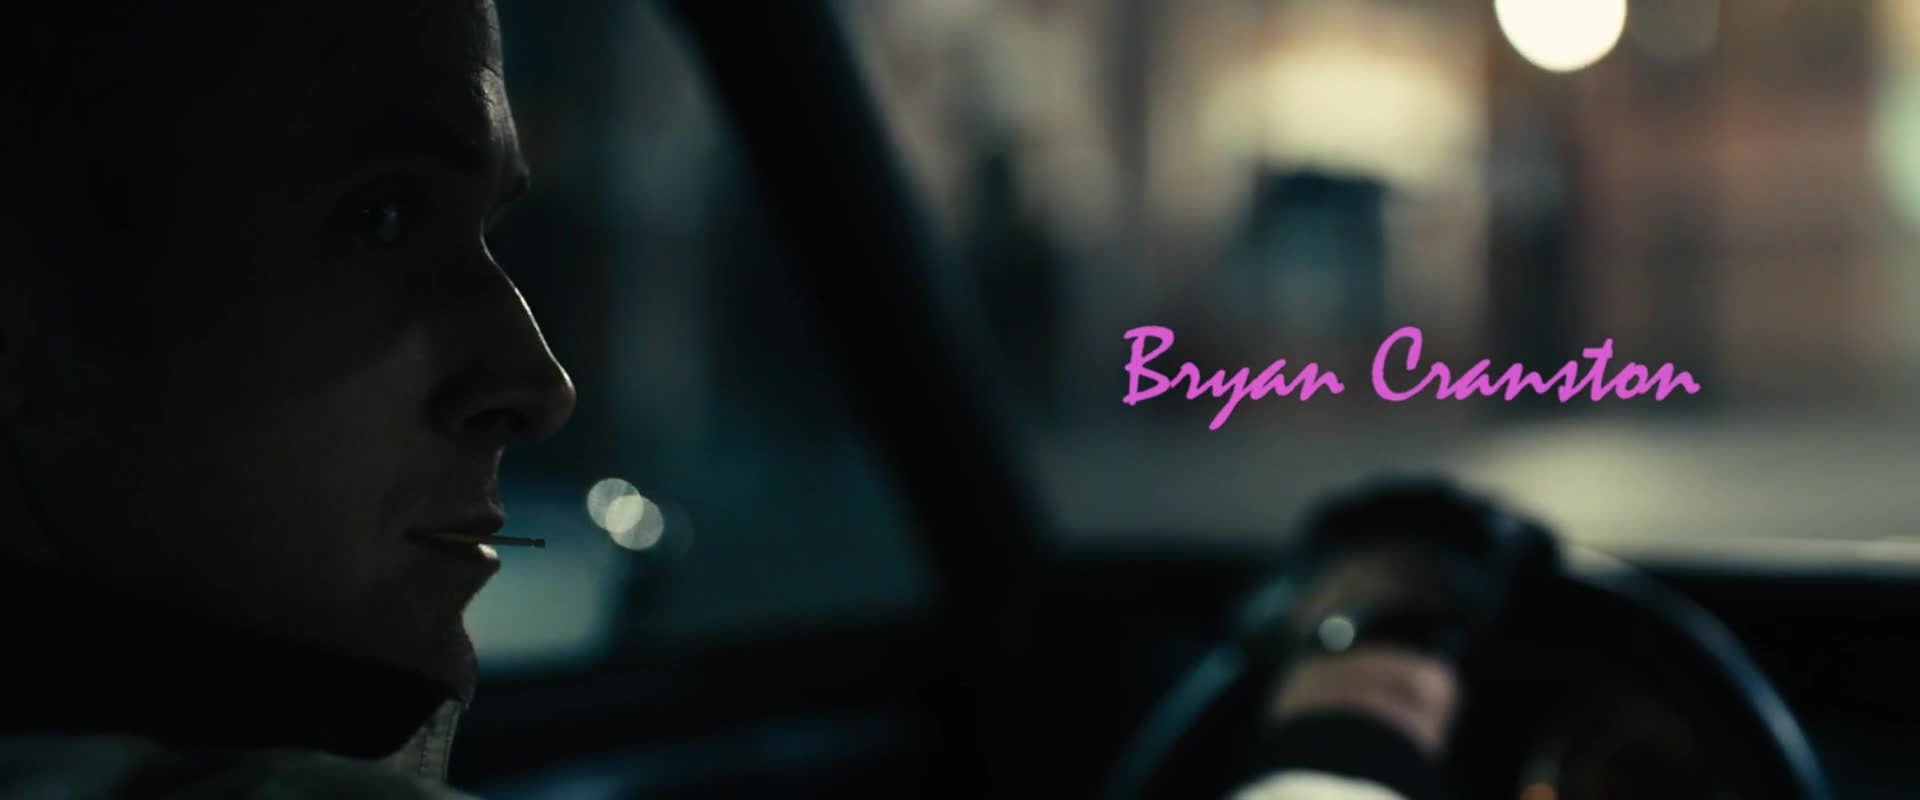 Jízda nadoraz (Ryan Gosling Carey Mulligan Bryan Cranston 2011 Krimi Thriller Drama 1080p ) Cz dabing mkv